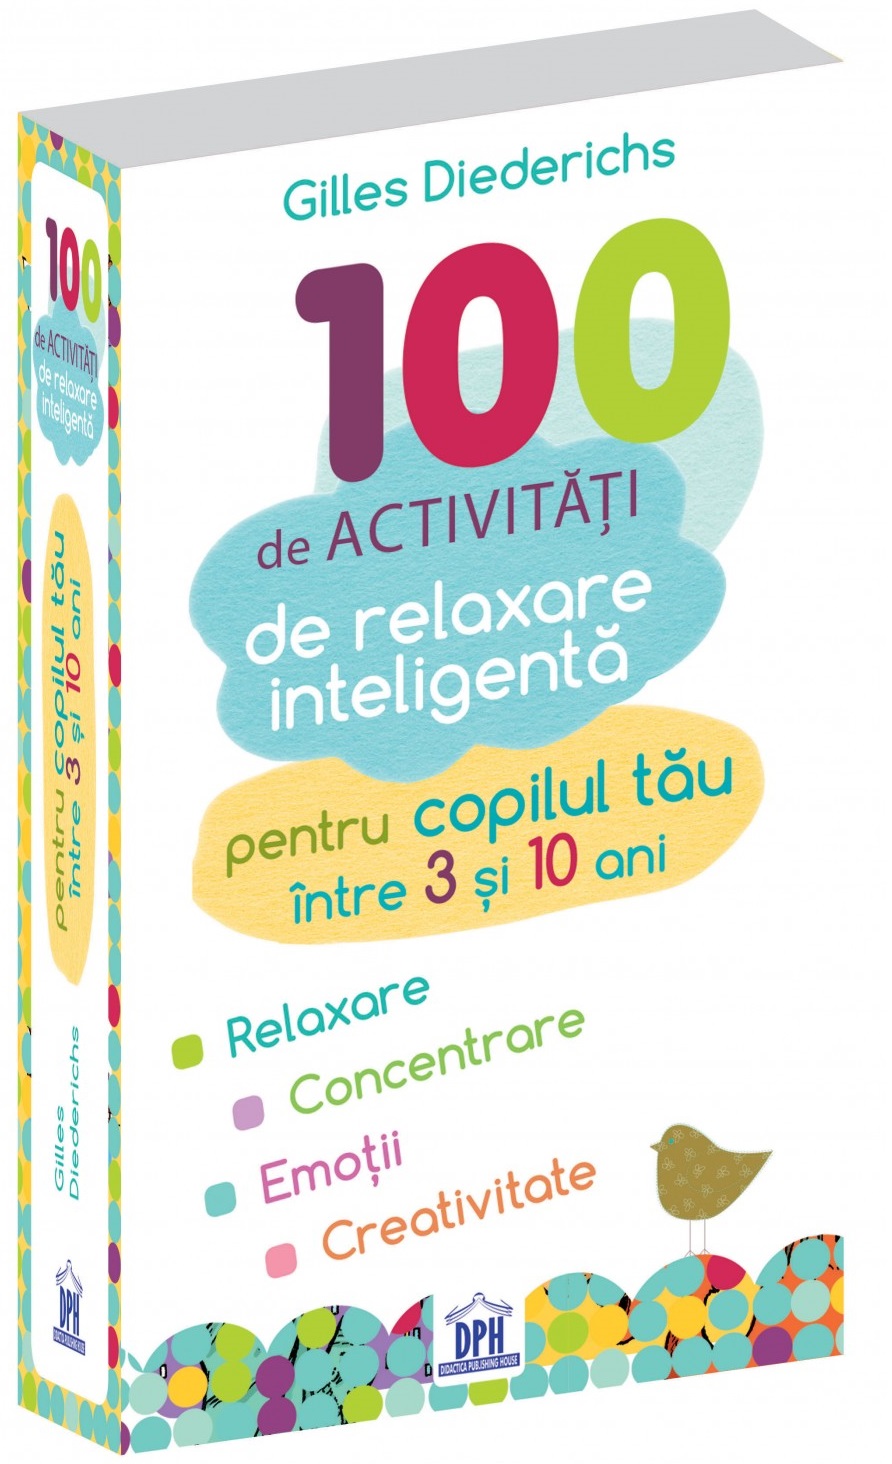 100 de activitati de relaxare inteligenta | Gilles Diederichs 100 2022